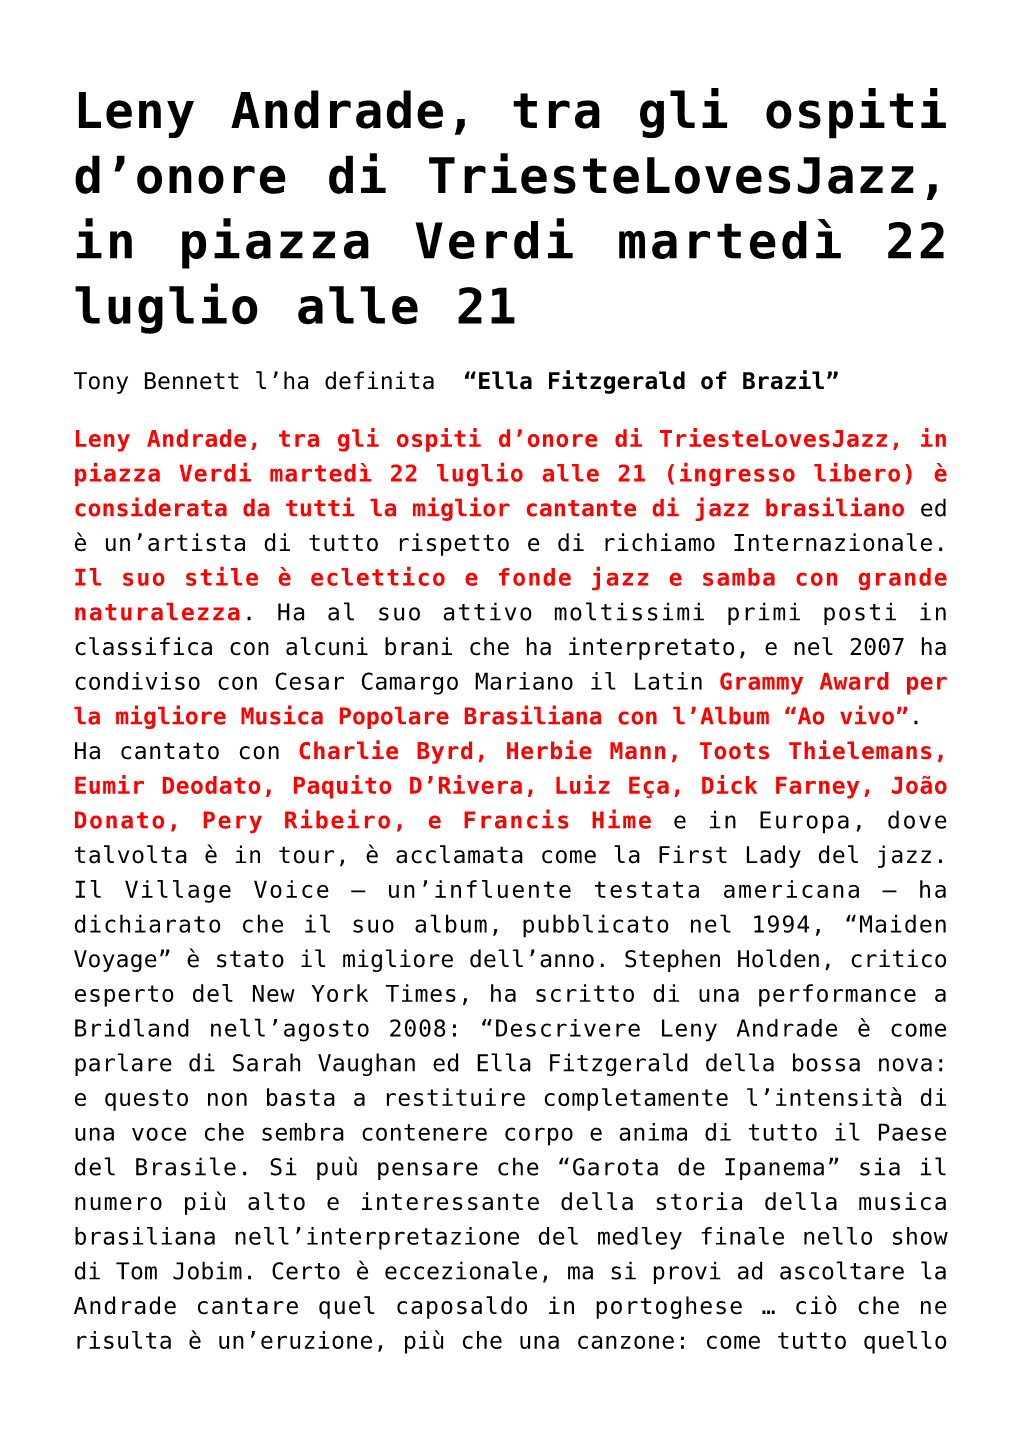 Leny Andrade, Tra Gli Ospiti D'onore Di Triestelovesjazz, in Piazza Verdi